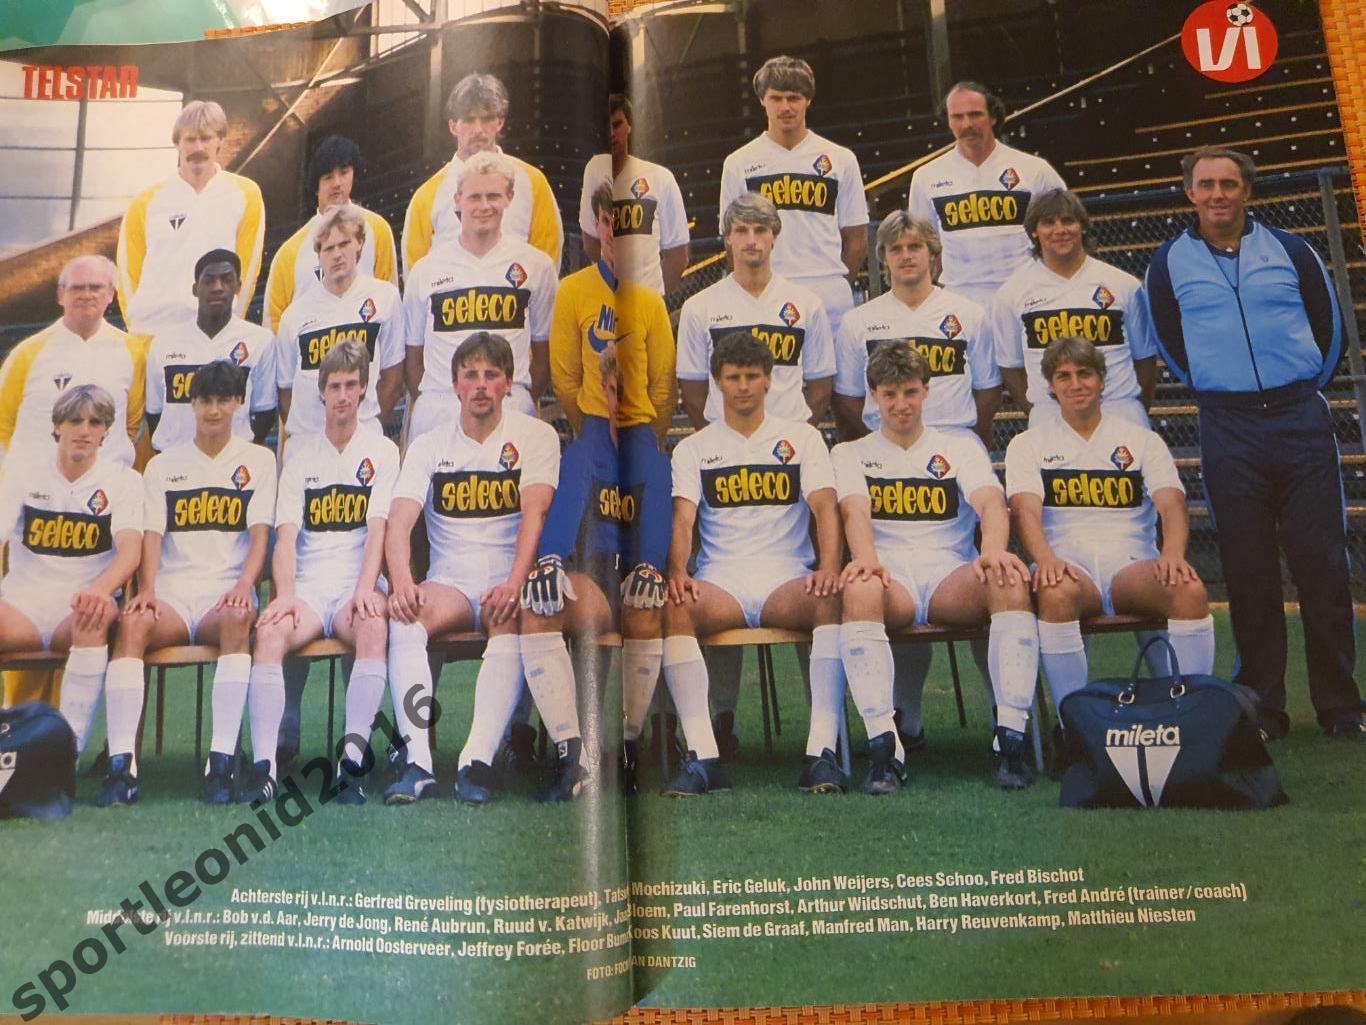 Voetbal International 1985 года выпуска.14 журналов.2 7